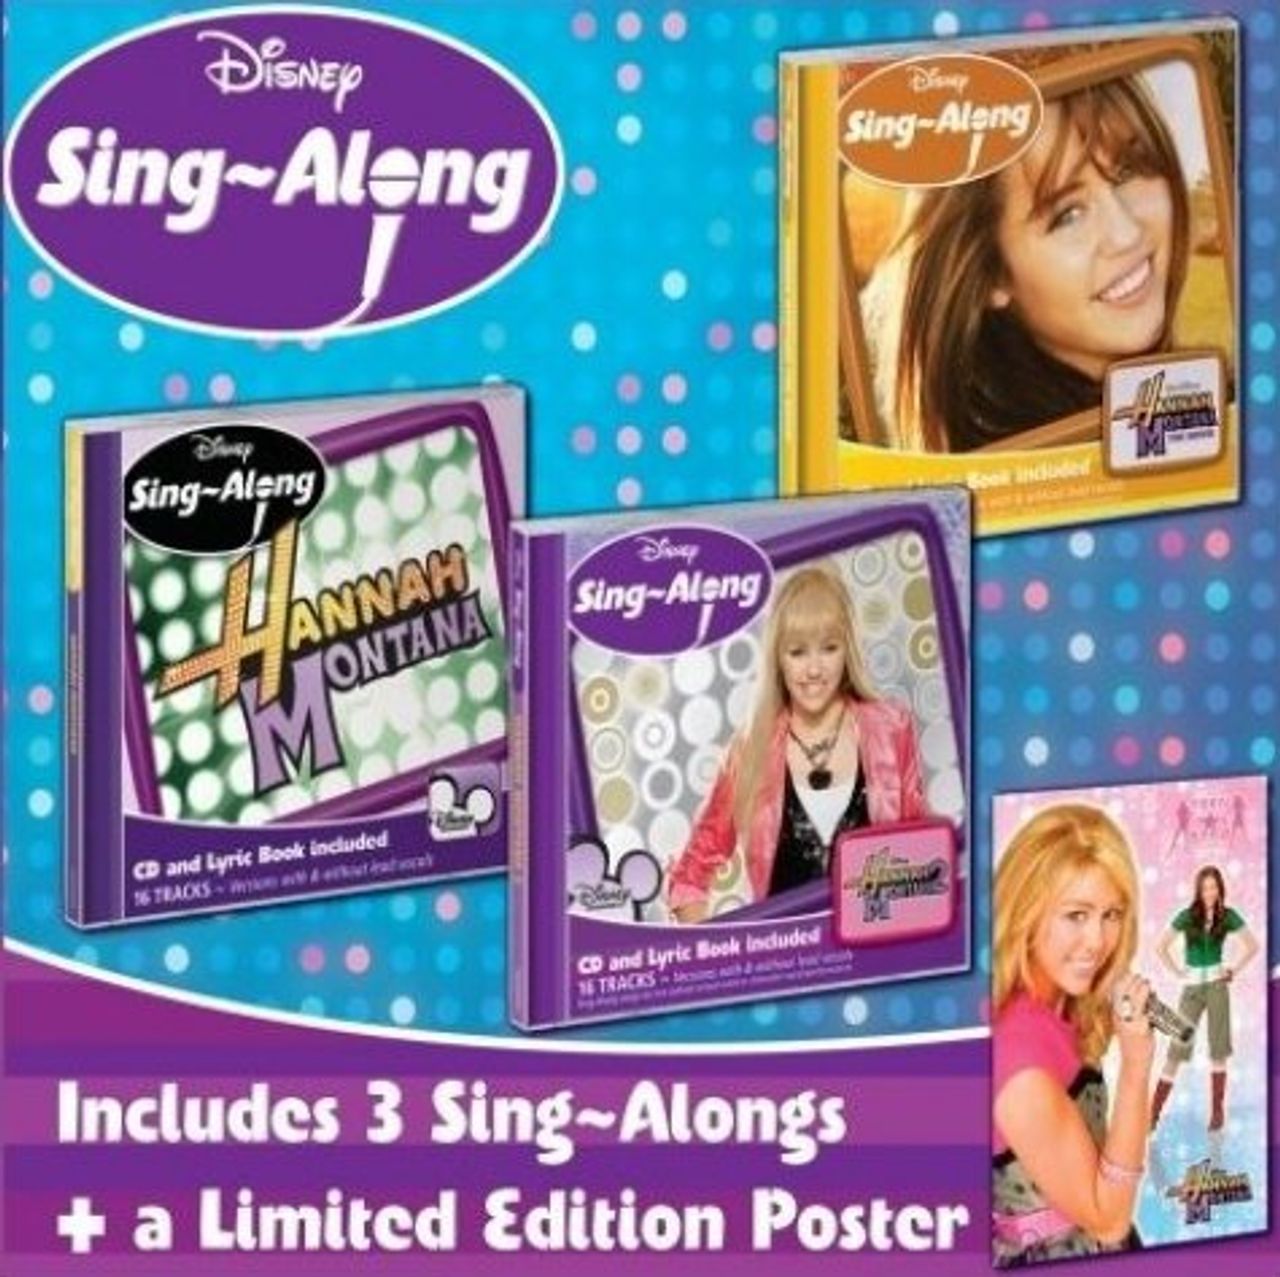 Karaoke DVD: Sing-A-Longs